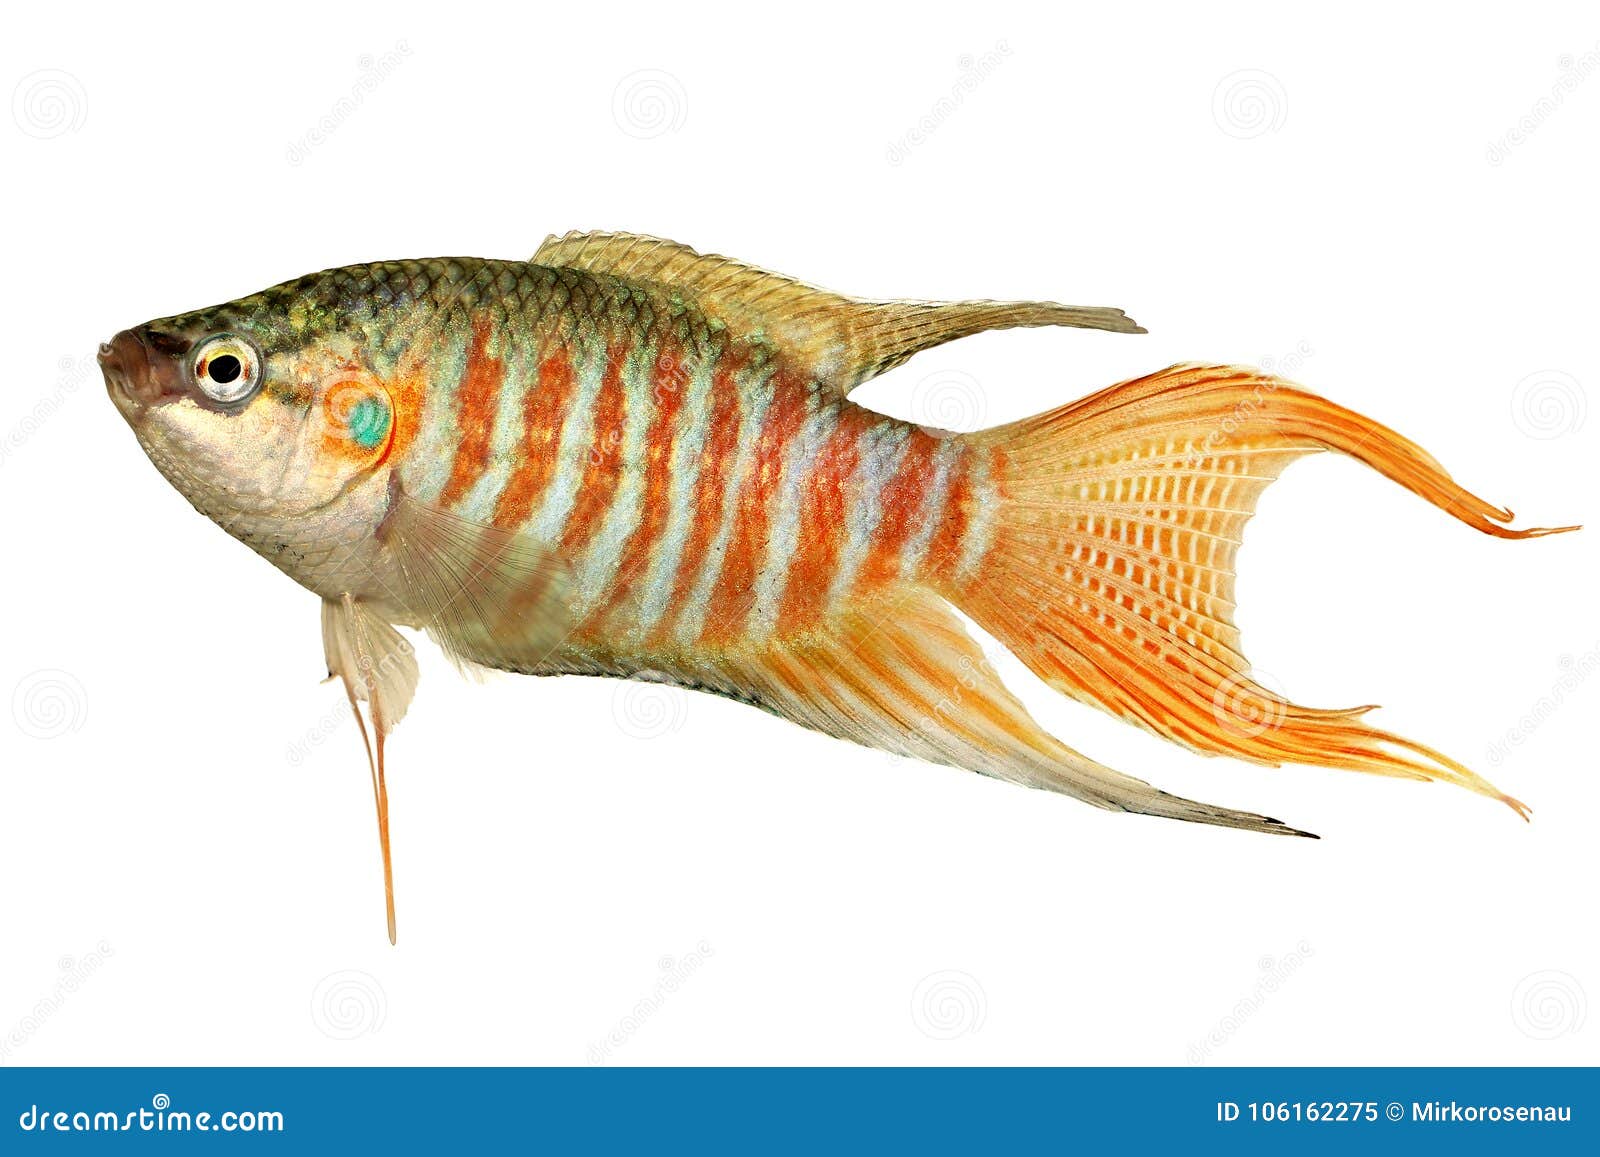 paradise fish gourami macropodus opercularis tropical aquarium fish